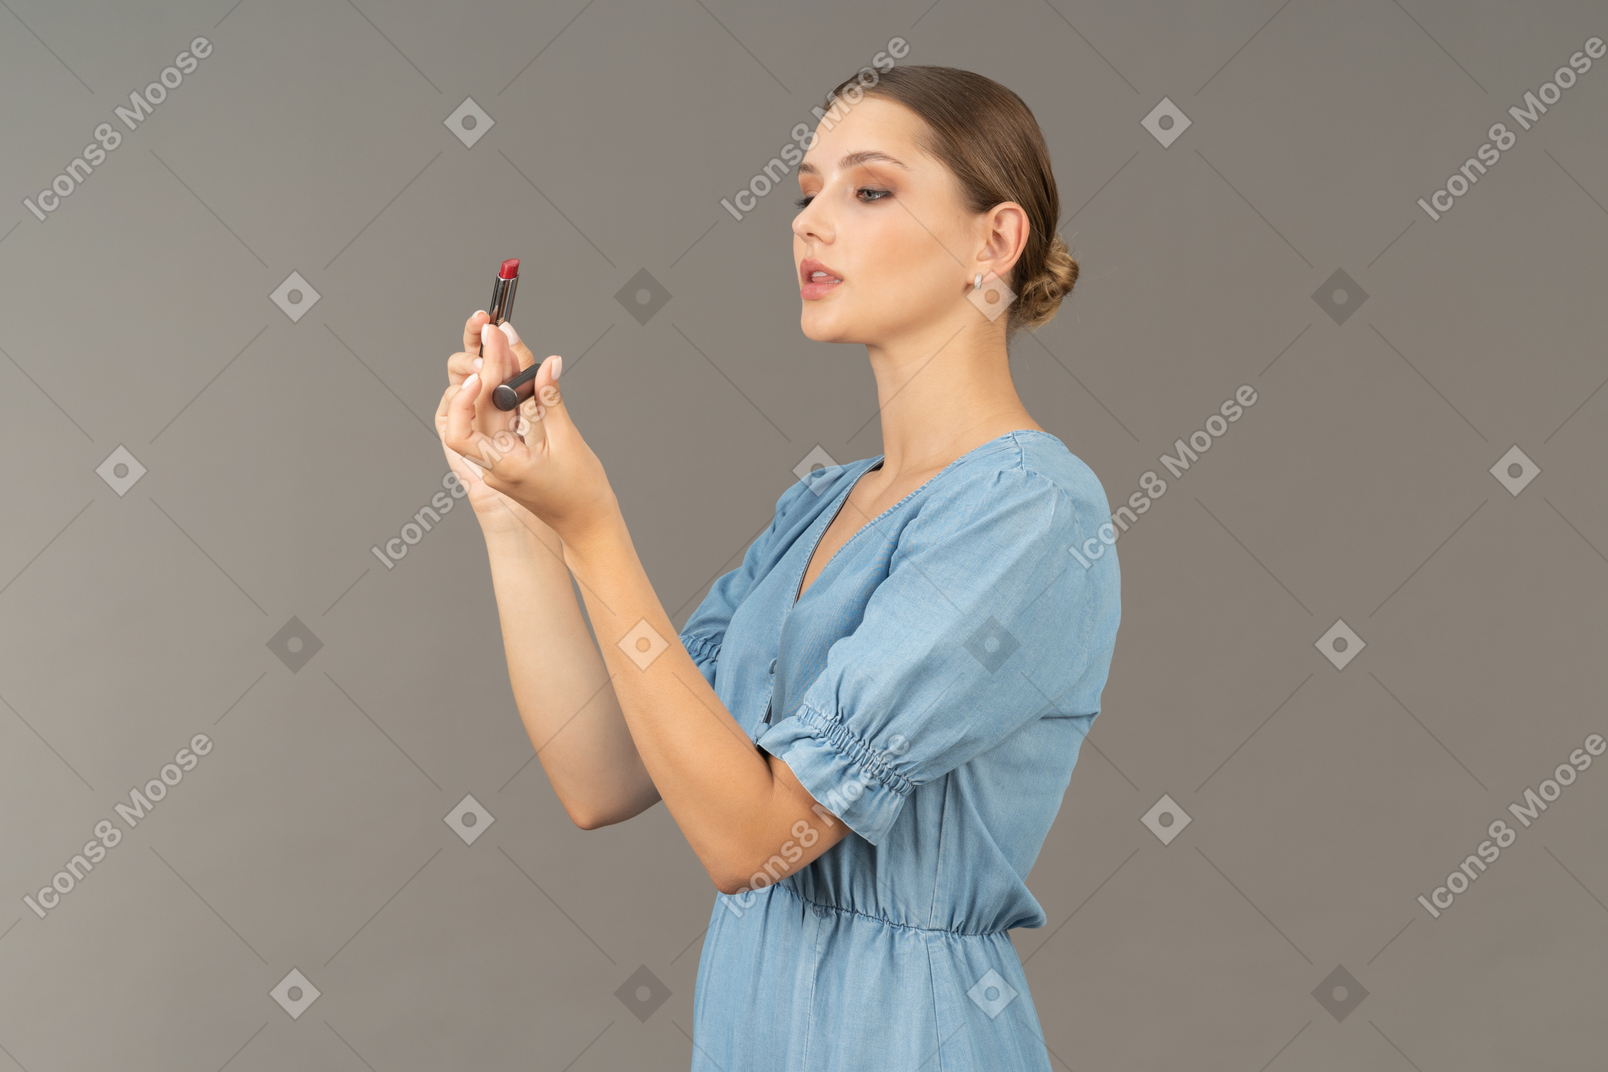 립스틱을 여는 파란 드레스를 입은 젊은 여성의 4분의 3 보기